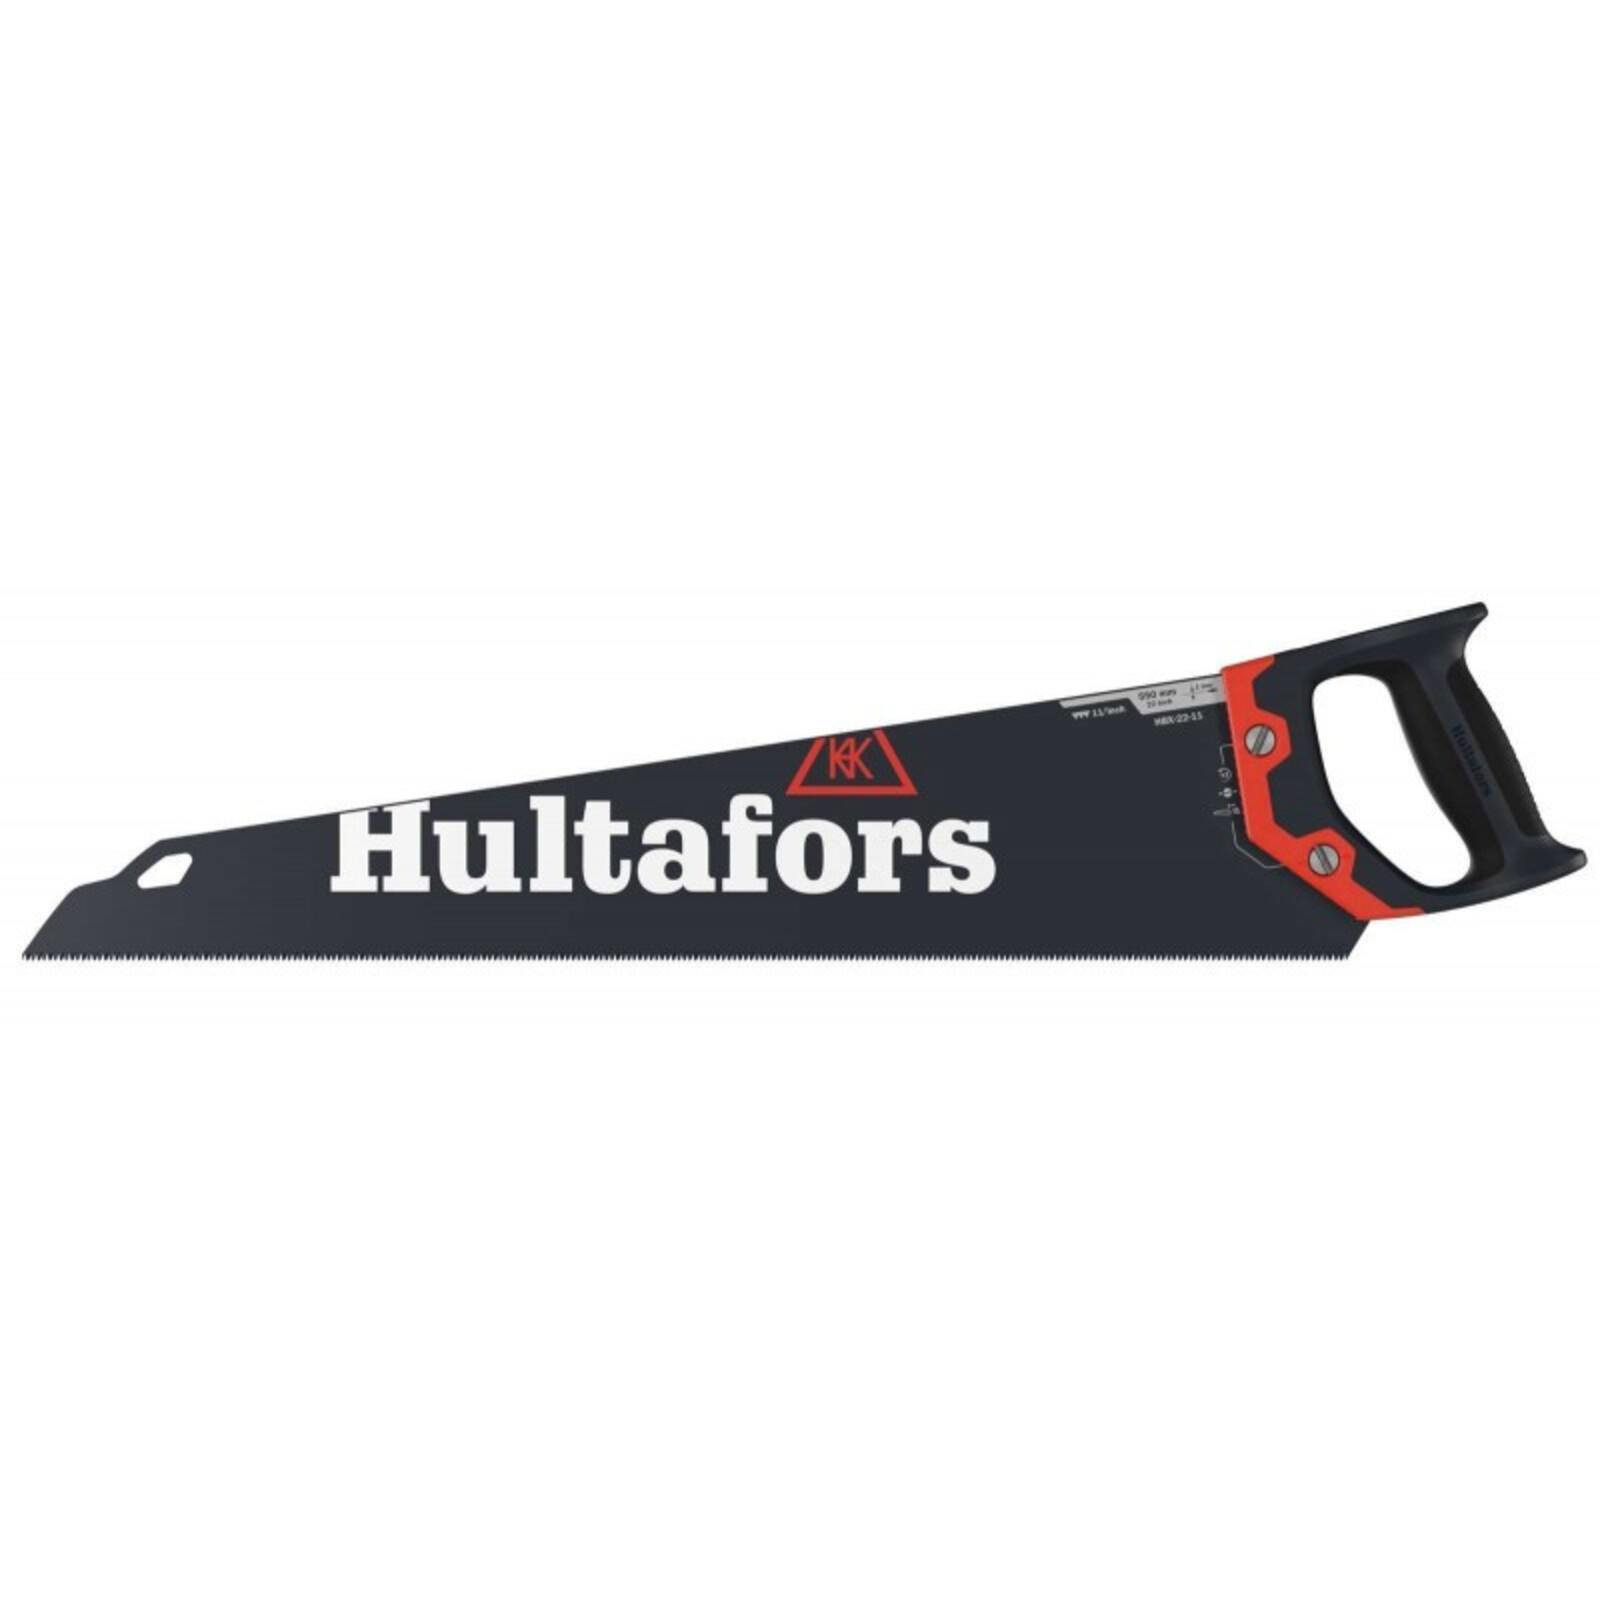 Ručná píla Hultafors HBX - veľkosť: 22-11, farba: čierna/červená